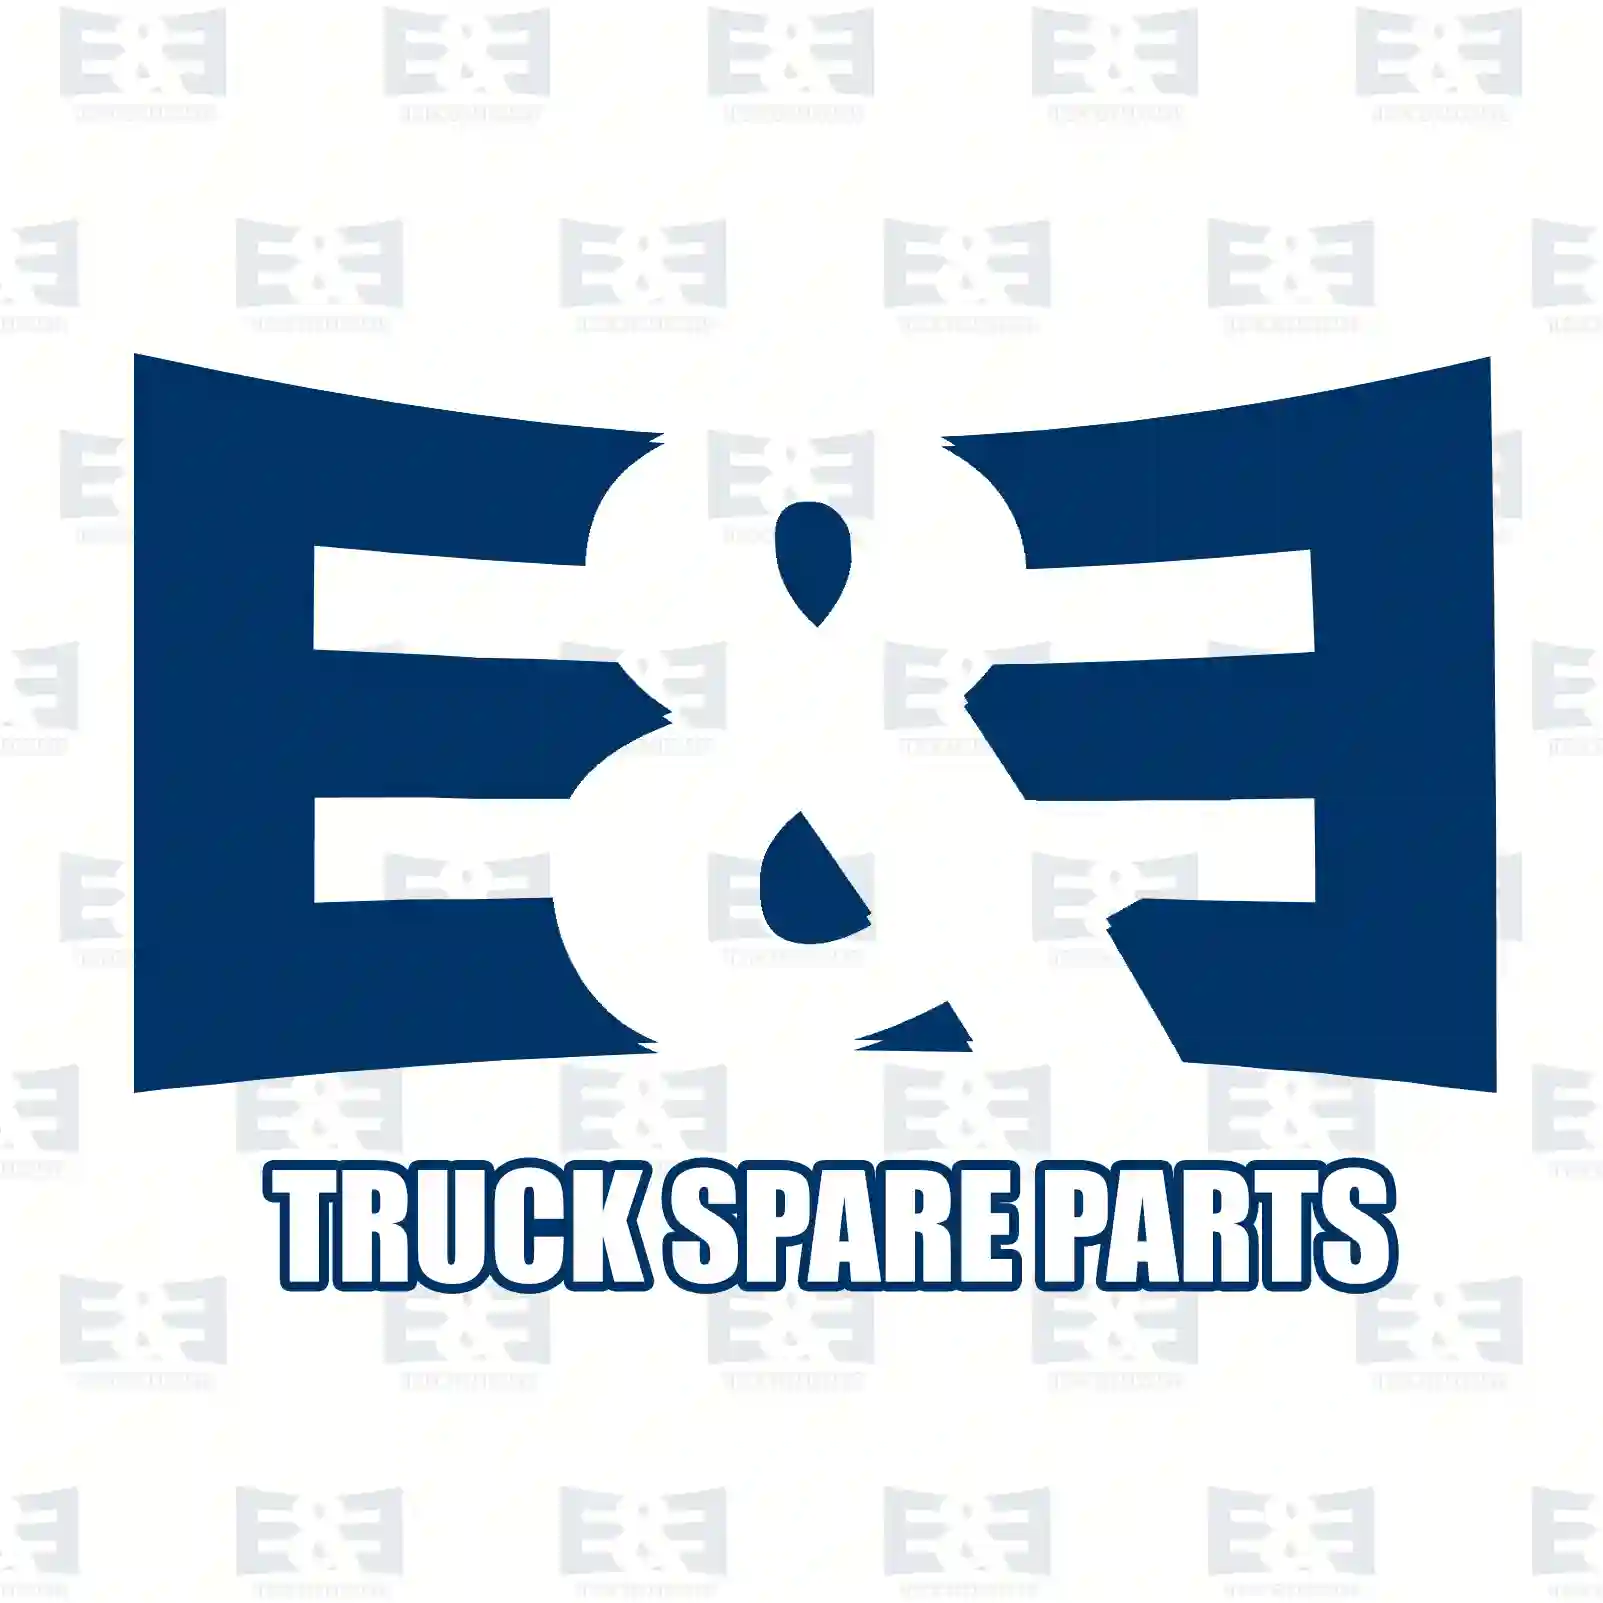 Bumper, rear, left, 2E2289736, 1637185480, 735685369, 1637185480 ||  2E2289736 E&E Truck Spare Parts | Truck Spare Parts, Auotomotive Spare Parts Bumper, rear, left, 2E2289736, 1637185480, 735685369, 1637185480 ||  2E2289736 E&E Truck Spare Parts | Truck Spare Parts, Auotomotive Spare Parts